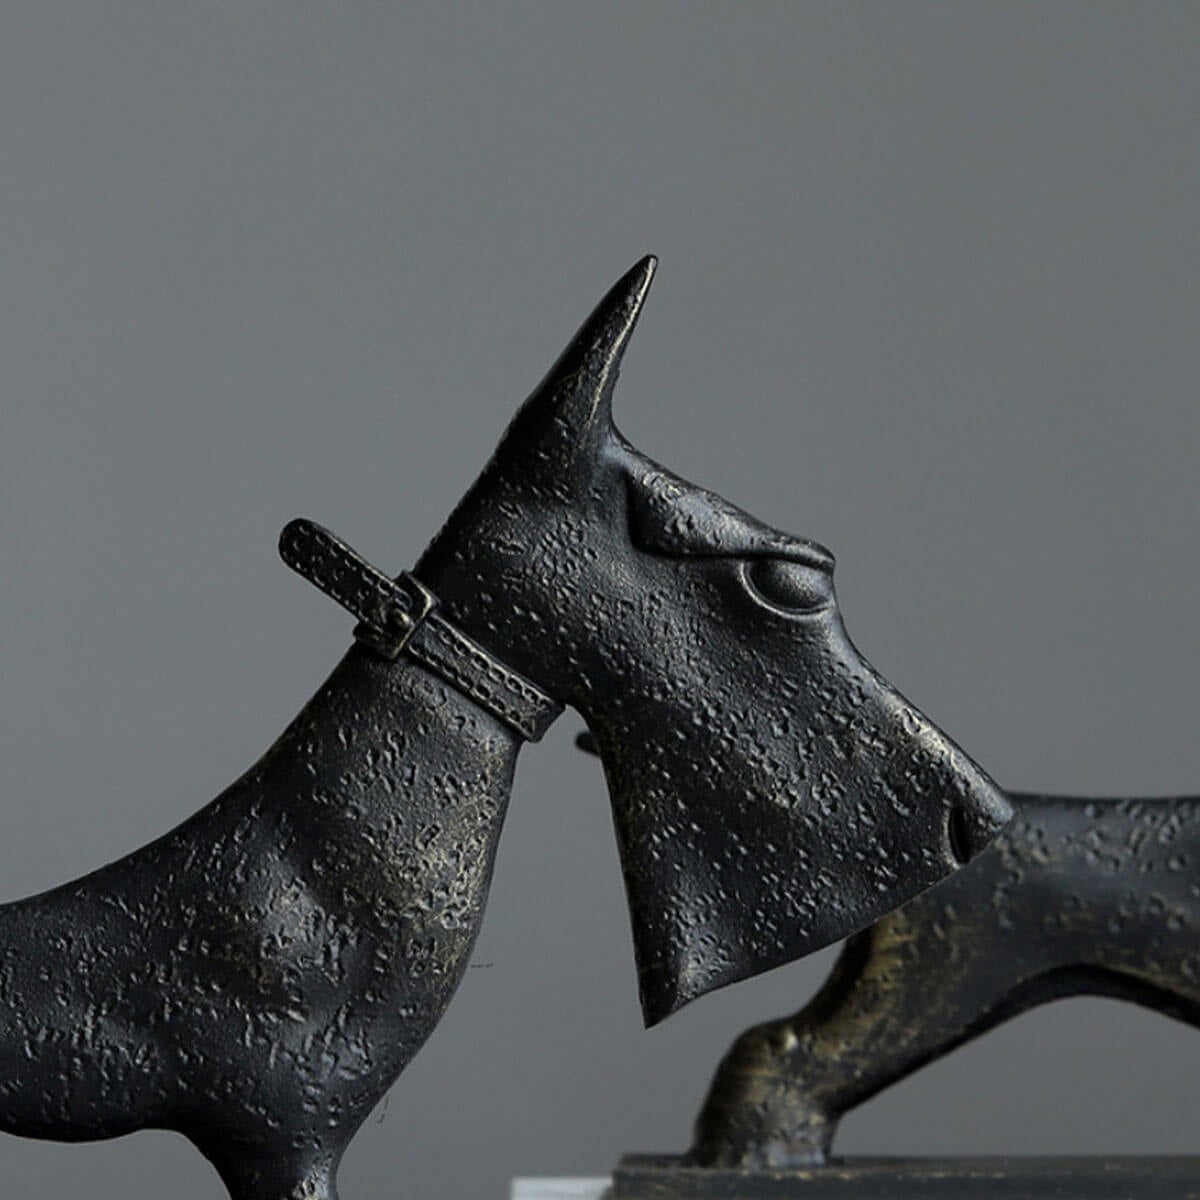 Schnauzer Iron Modern Art Dog Sculpture